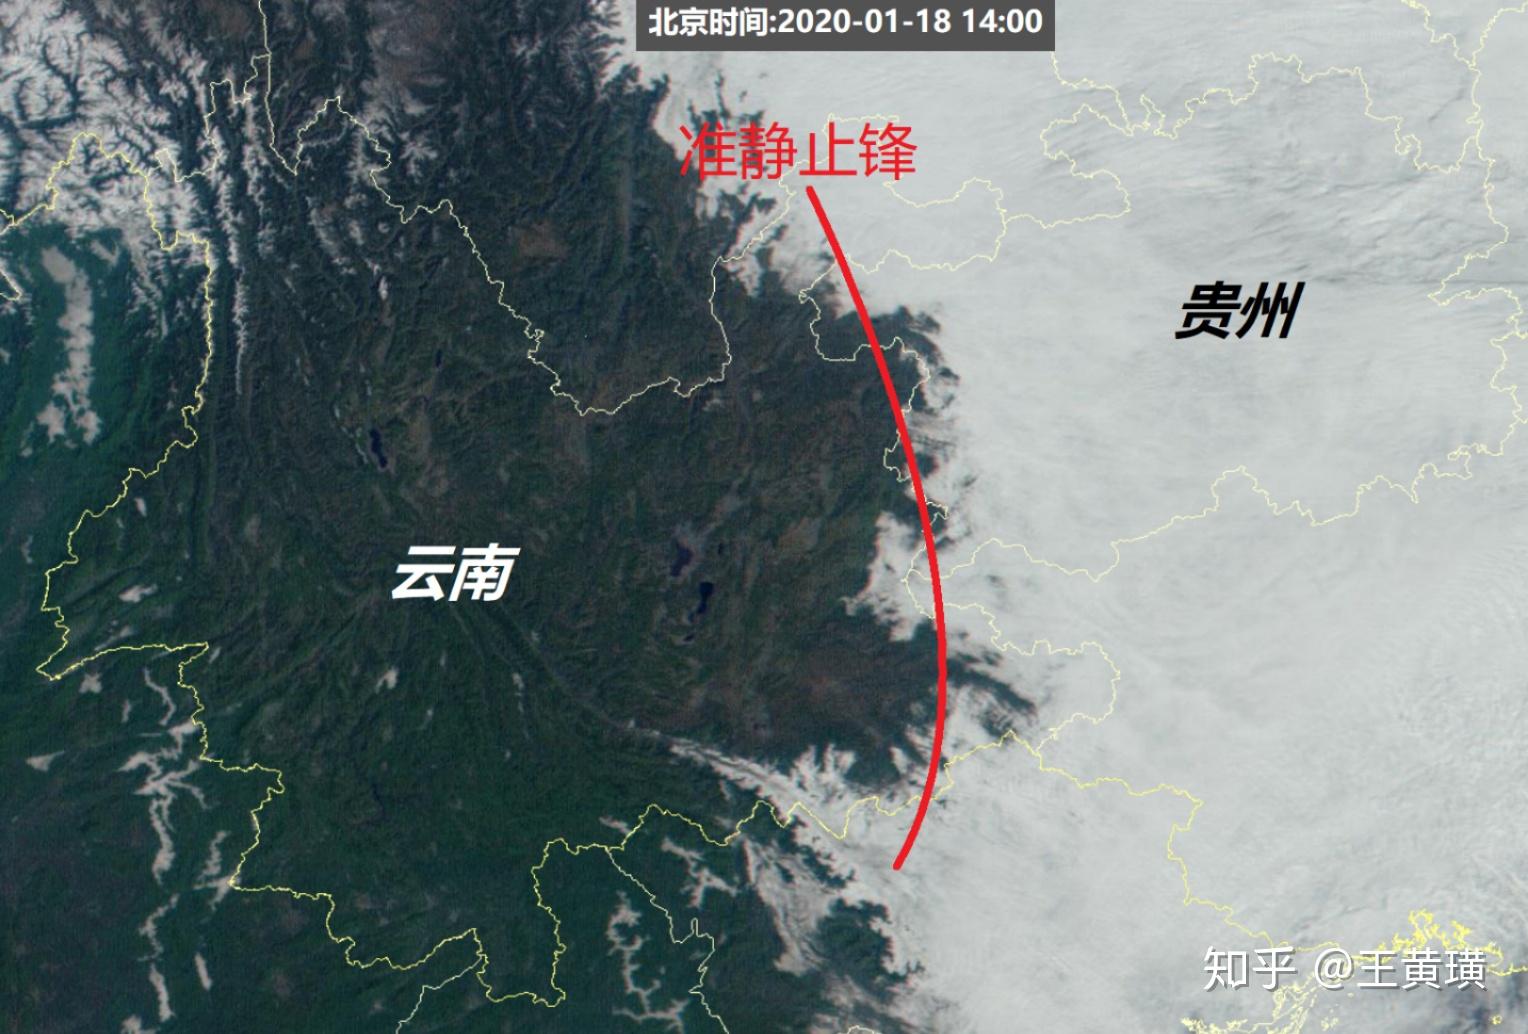 TM卫星、SPOT卫星、哨兵卫星等低分辨率卫星拍摄的云南省昆明市影像图